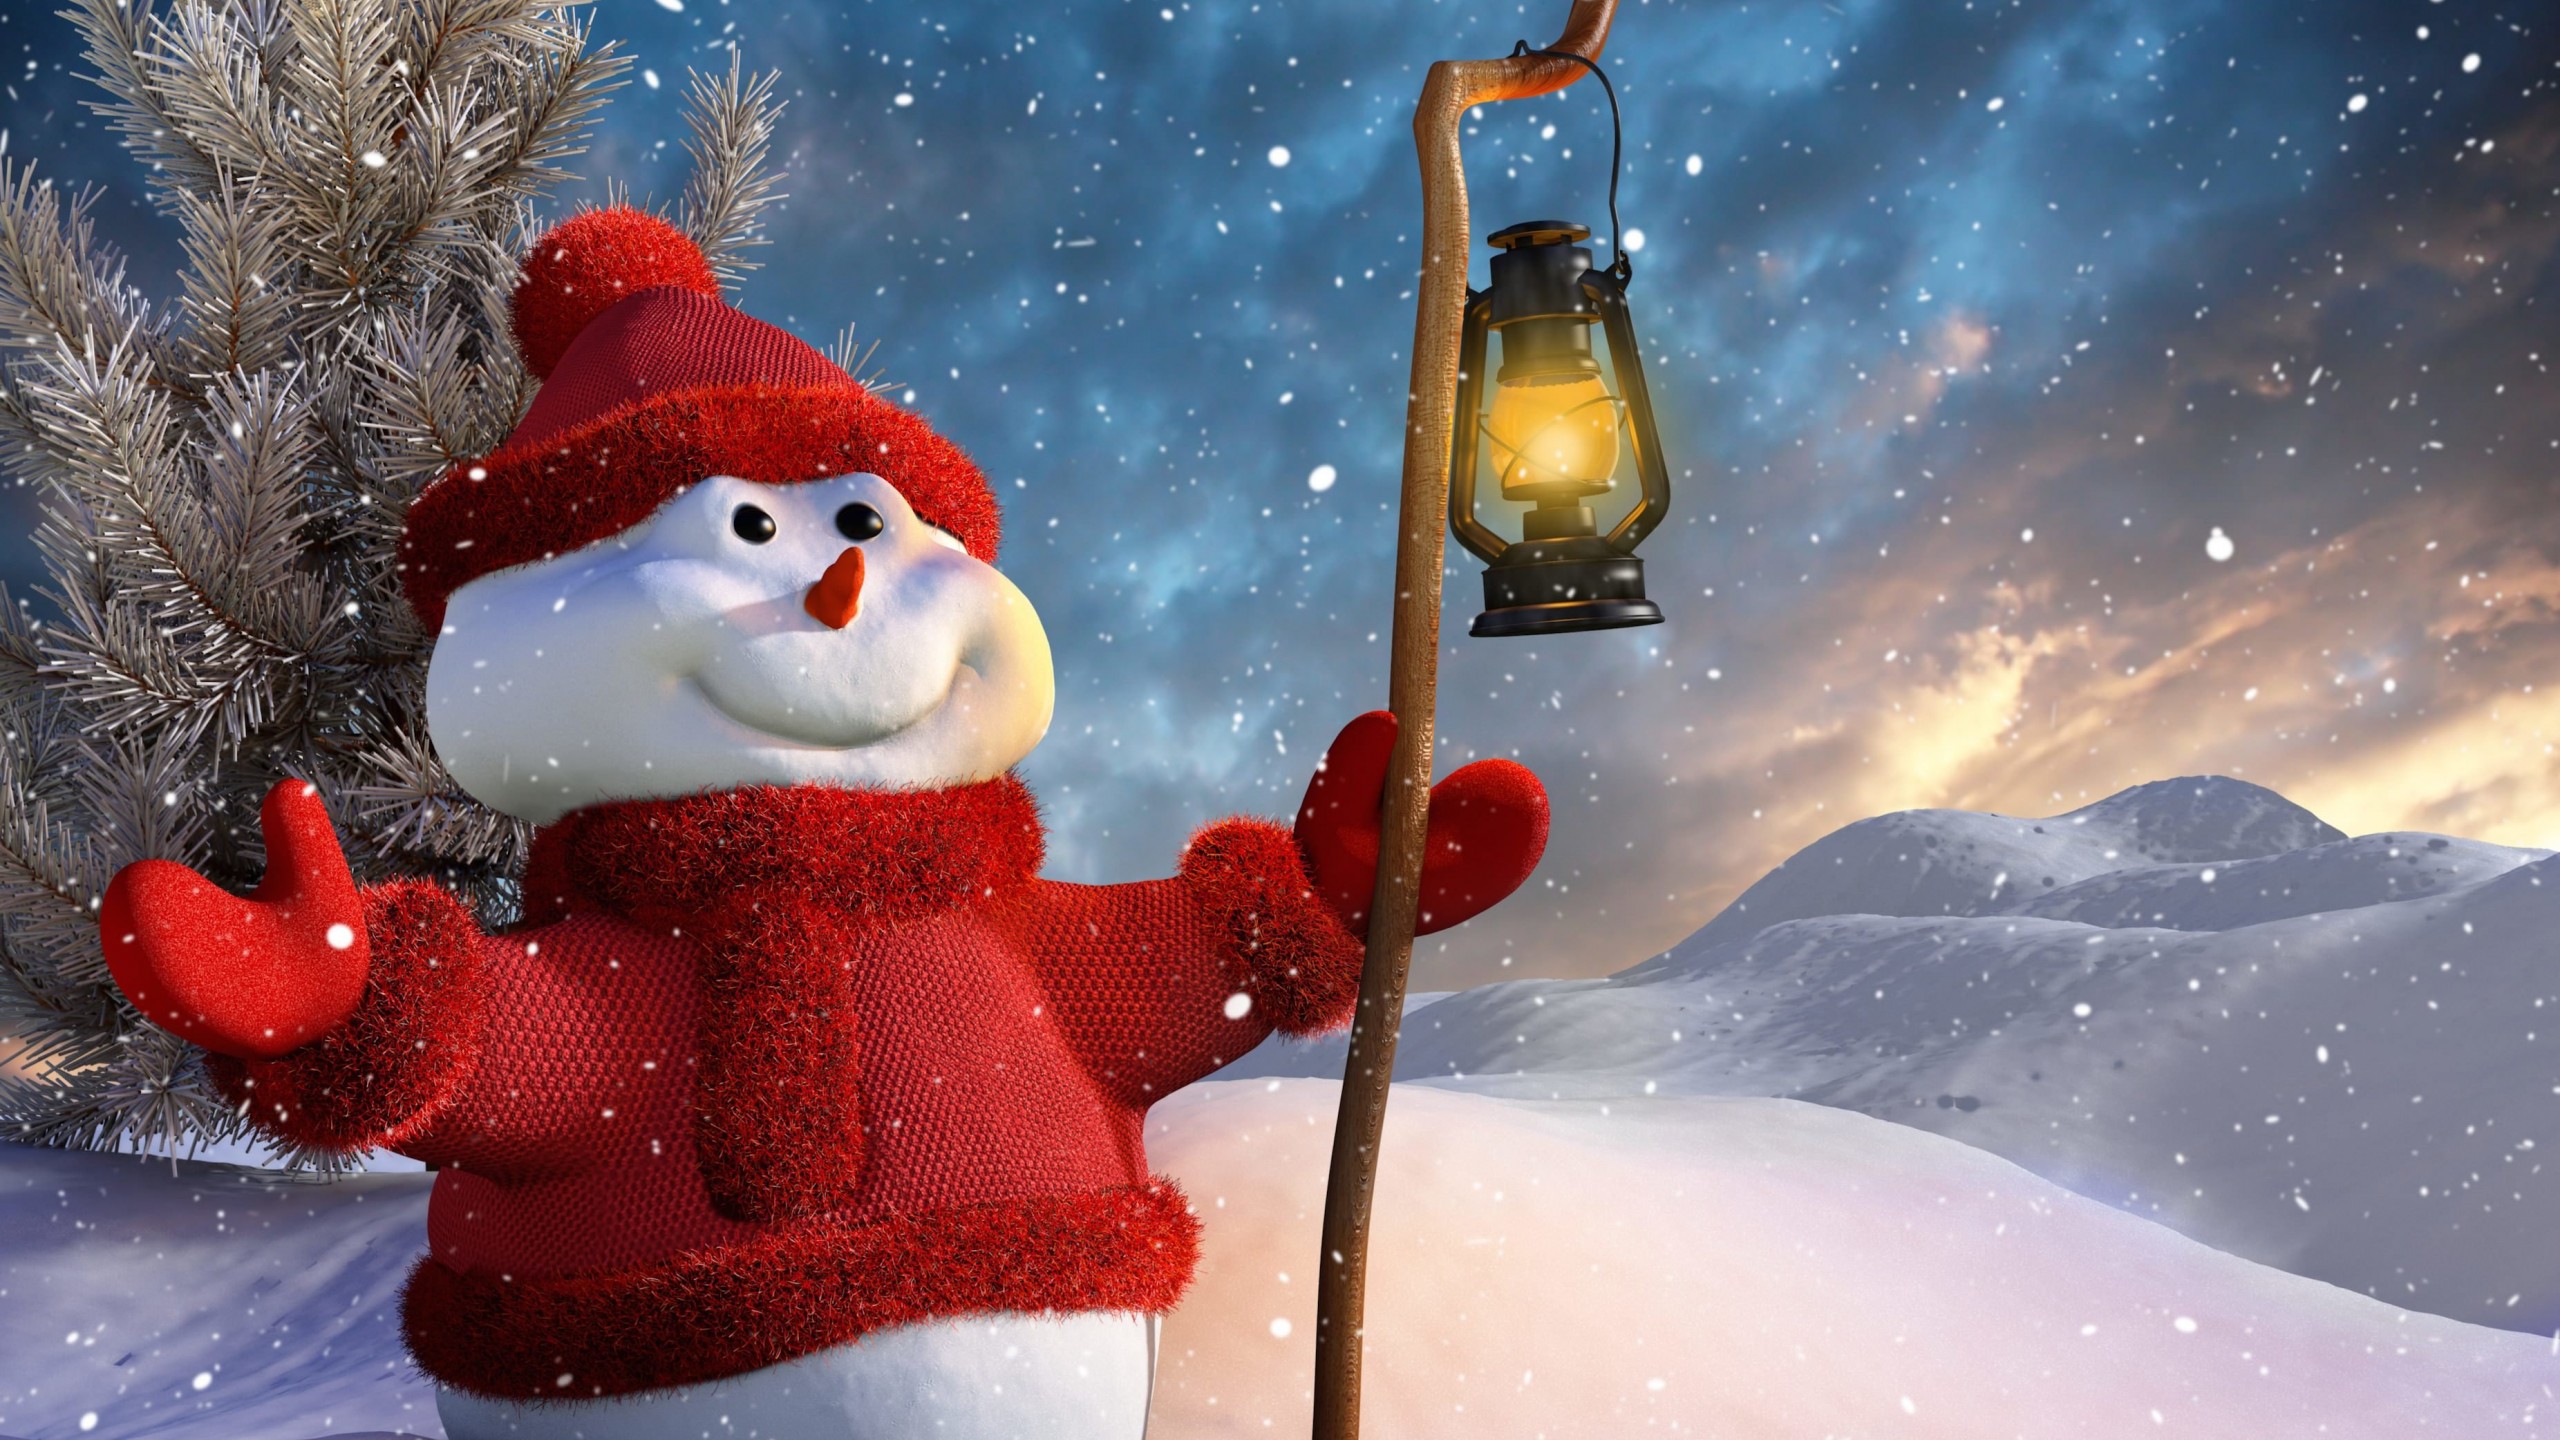 Christmas Snowman Wallpaper for Desktop 2560x1440